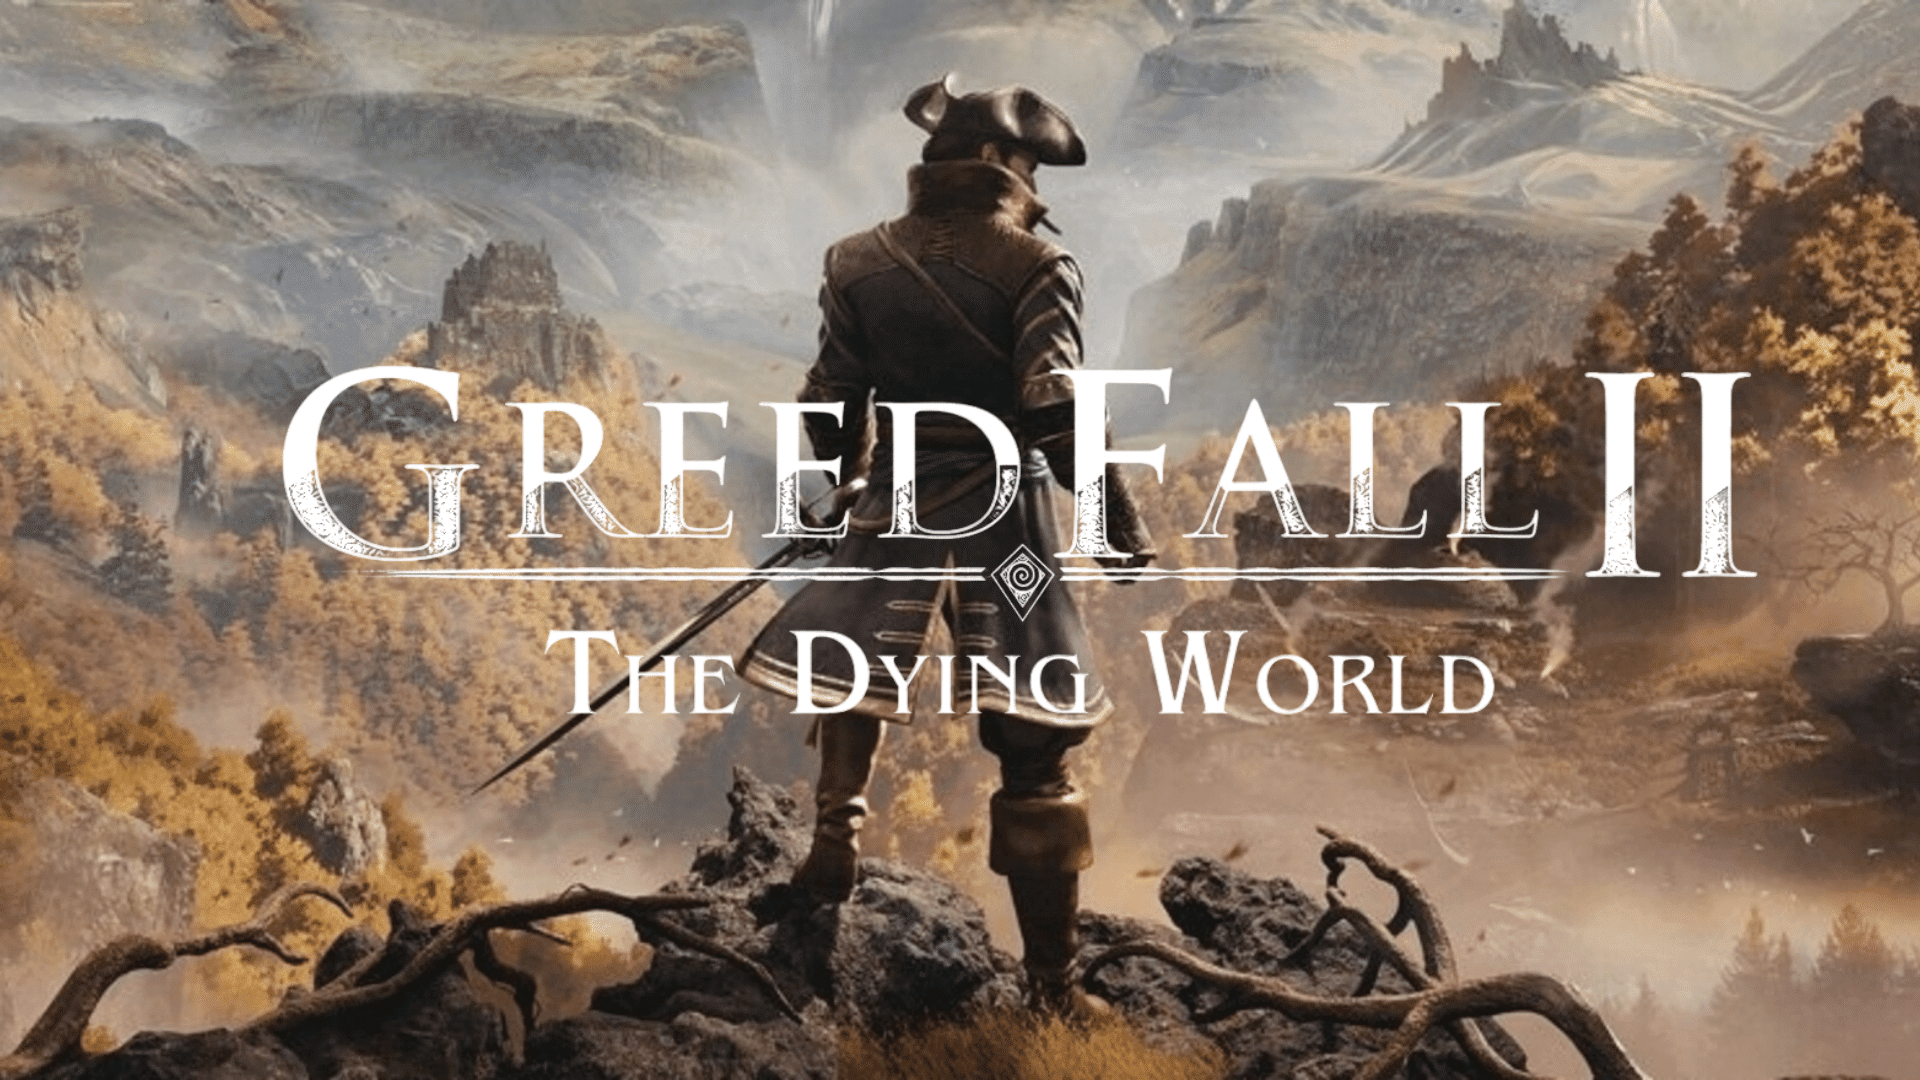 Les développeurs de GreedFall 2 : The Dying World ont révélé de nouveaux détails sur le jeu : "plus de possibilités romantiques" et des caméos potentiels de la partie précédente du jeu.